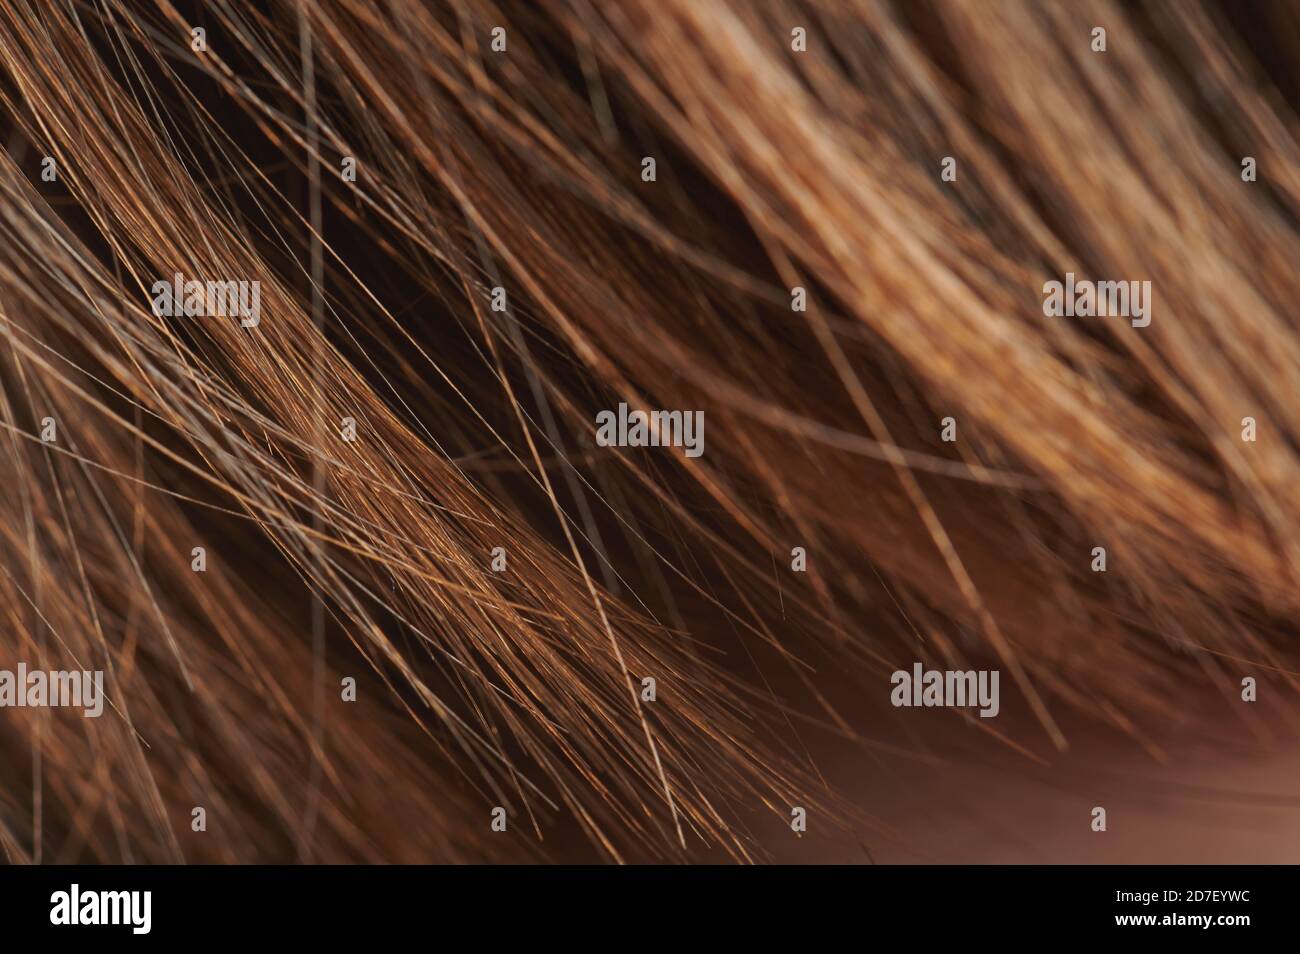 Brown orange color hair macro view. Ends of heathy hair Stock Photo